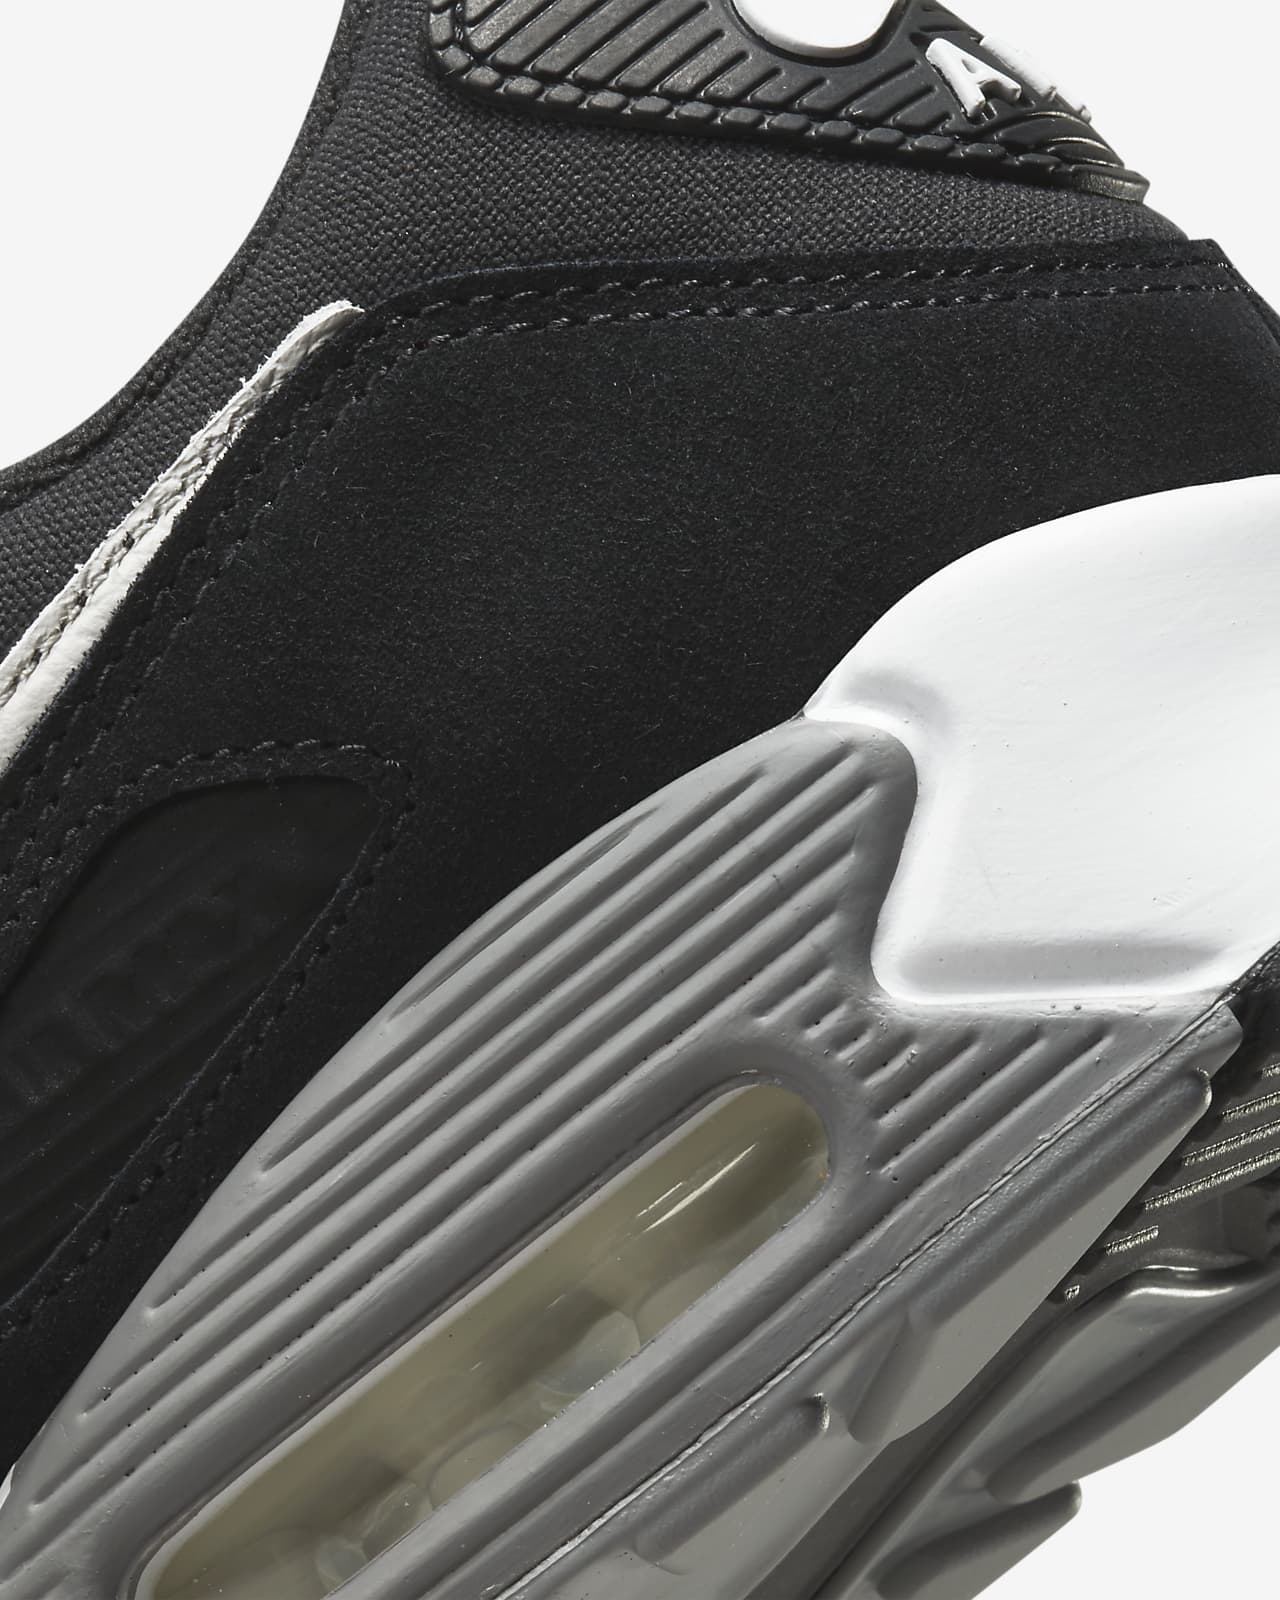 Nike Air Max 90 Premium Men's Shoes دواء مغص للاطفال